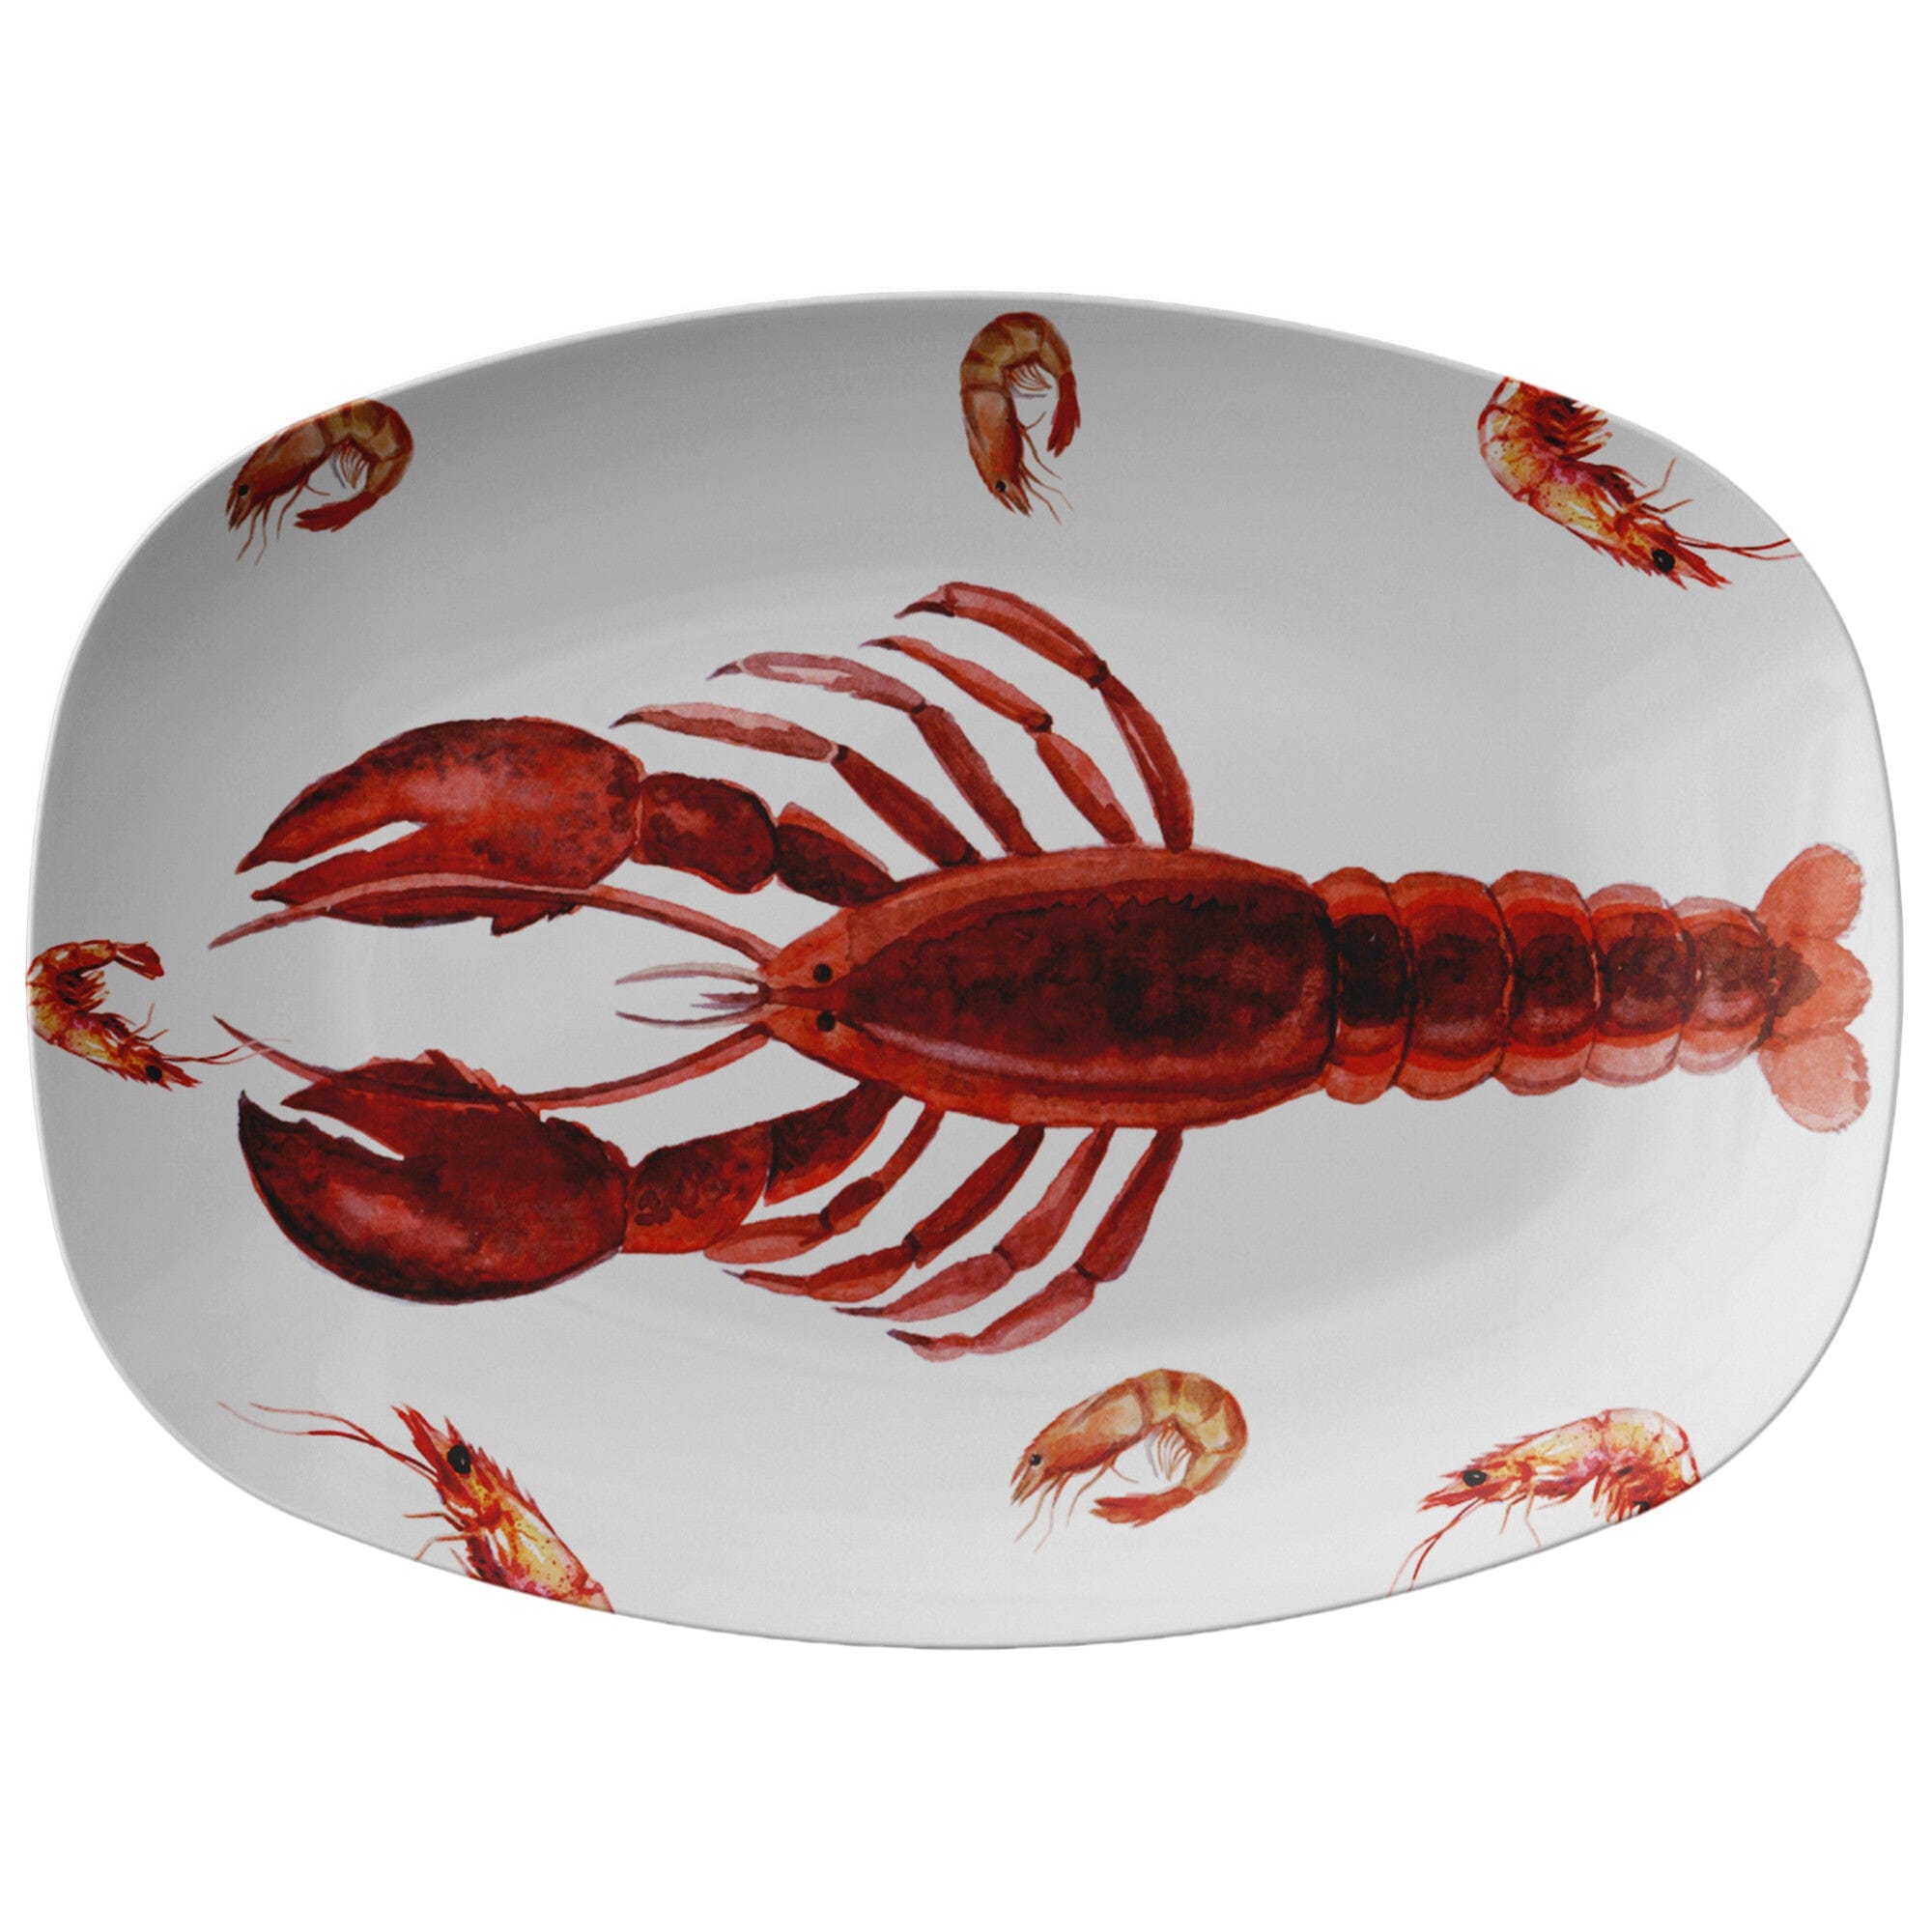 Kate McEnroe New York Shellfish Lobster Platter Serving Platters 9727